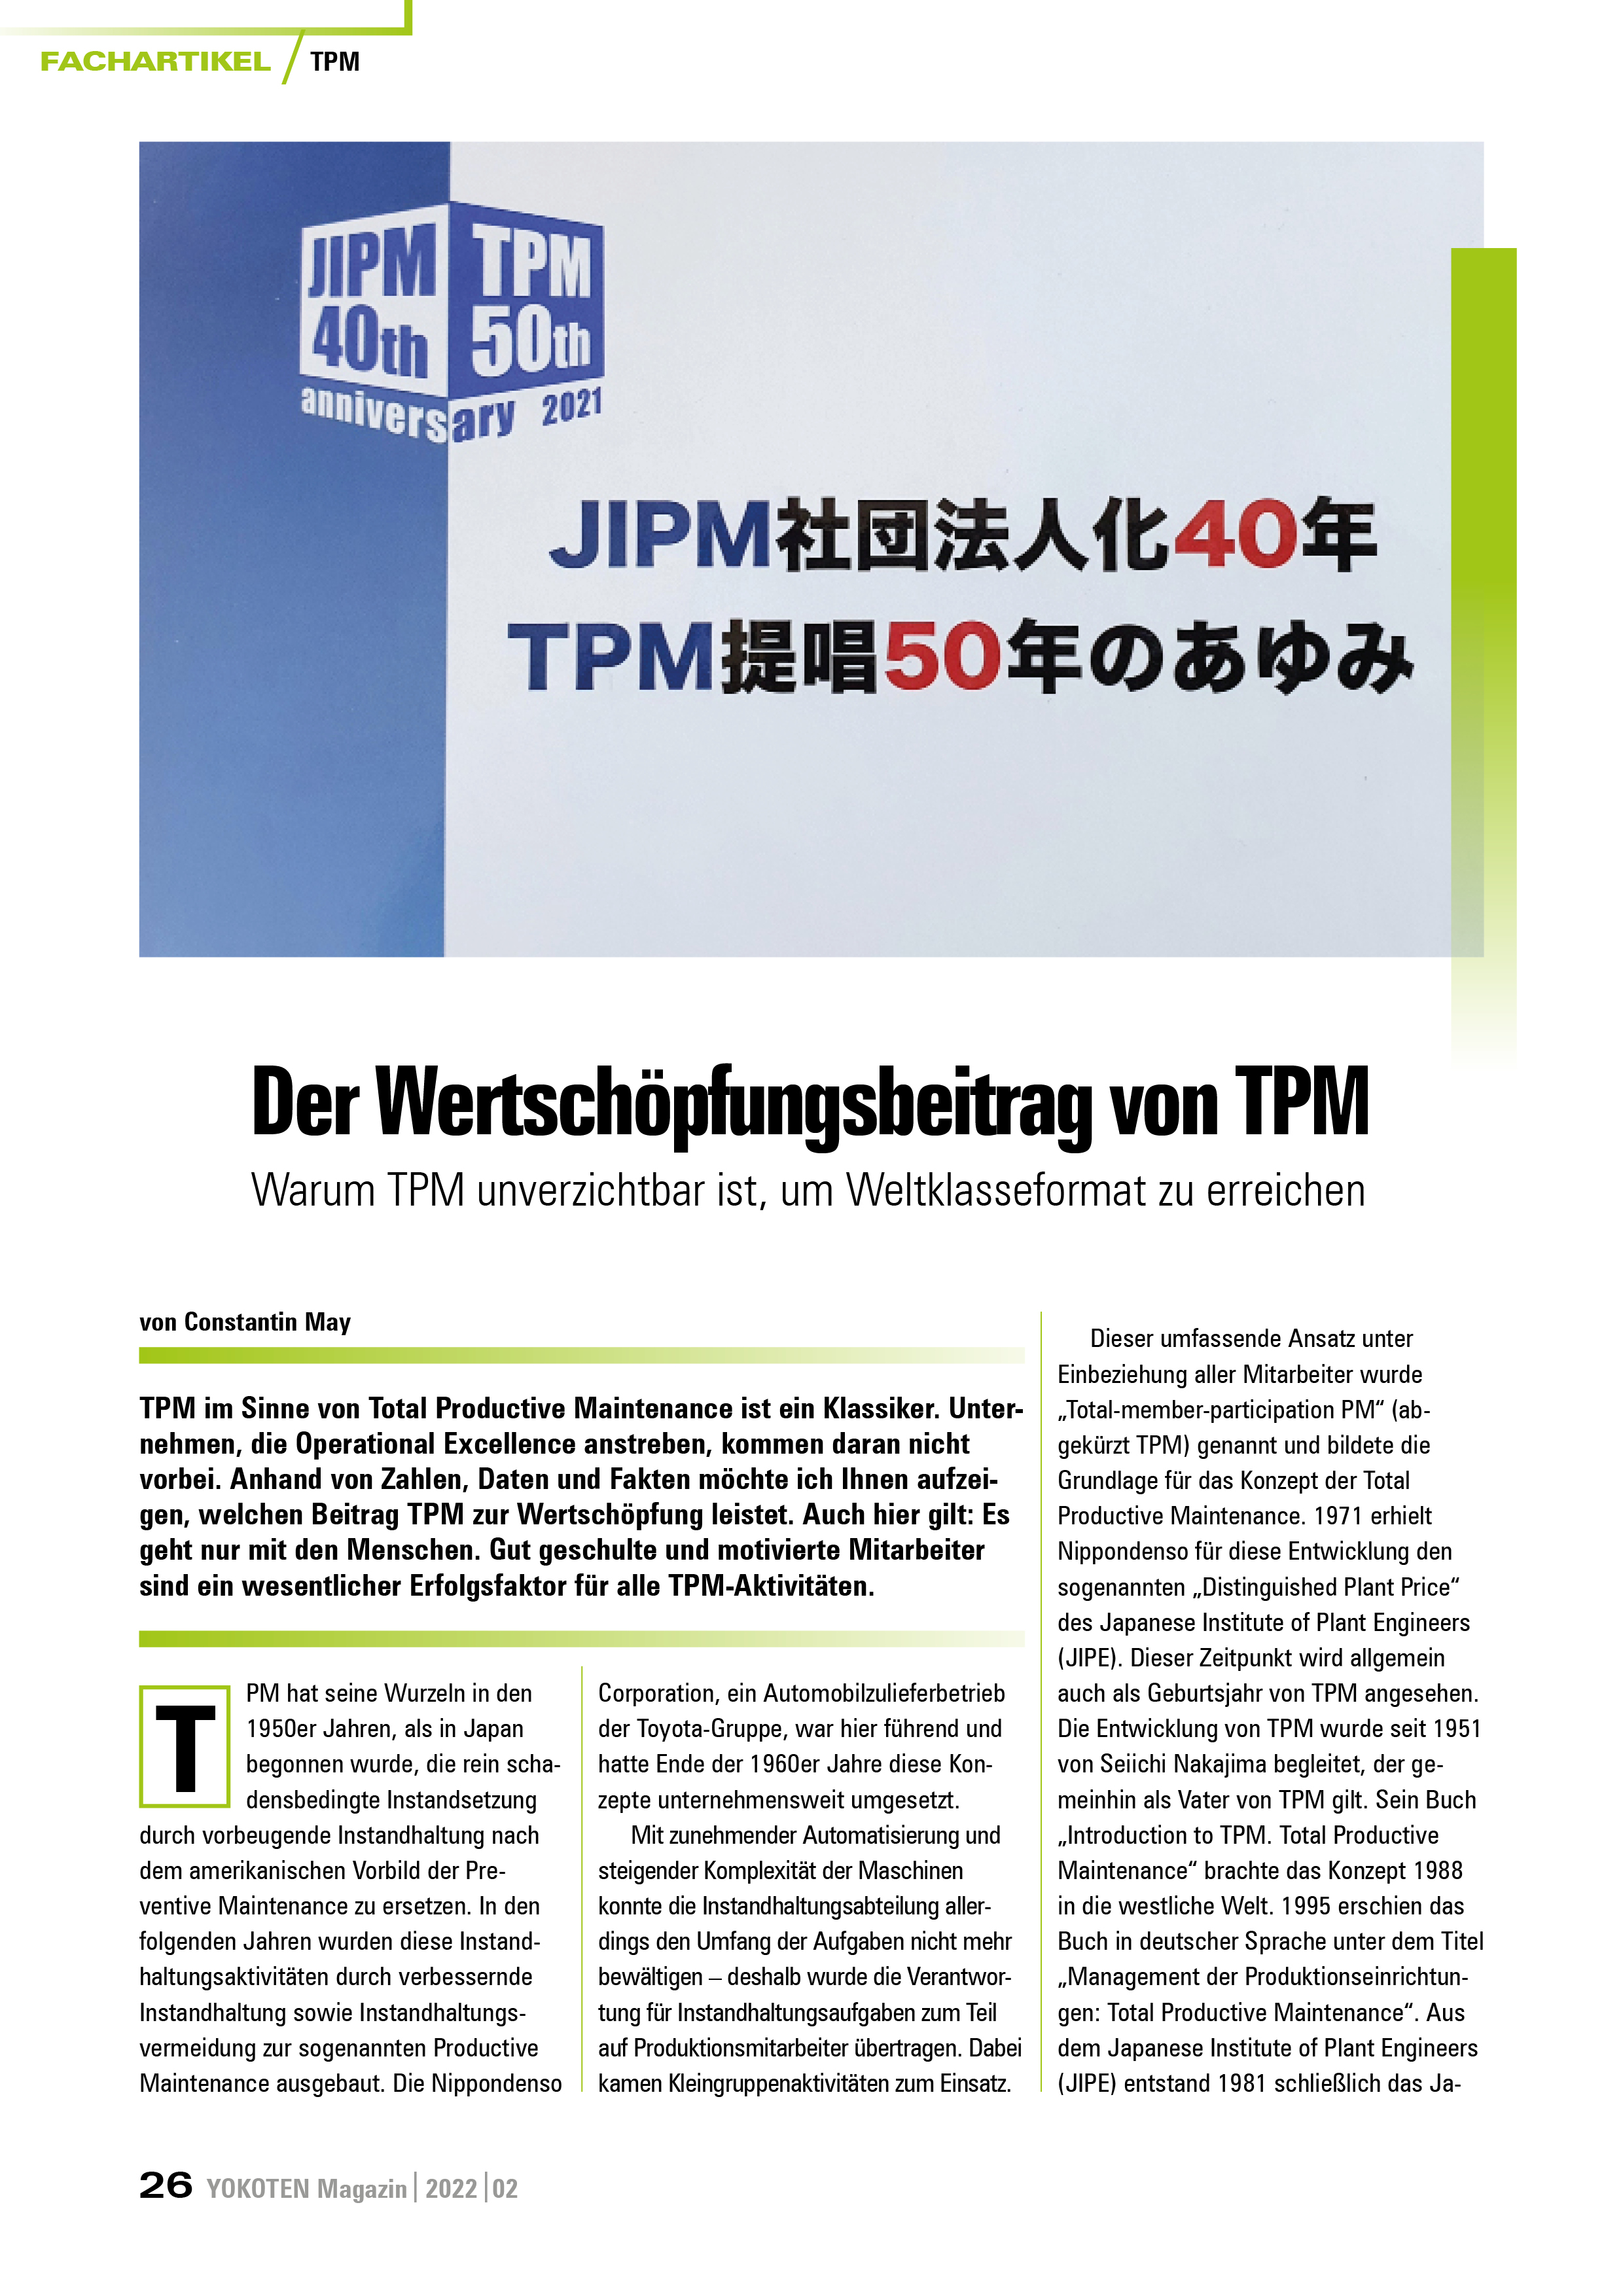 Der Wertschöpfungsbeitrag von TPM - Artikel aus Fachmagazin YOKOTEN 2022-02